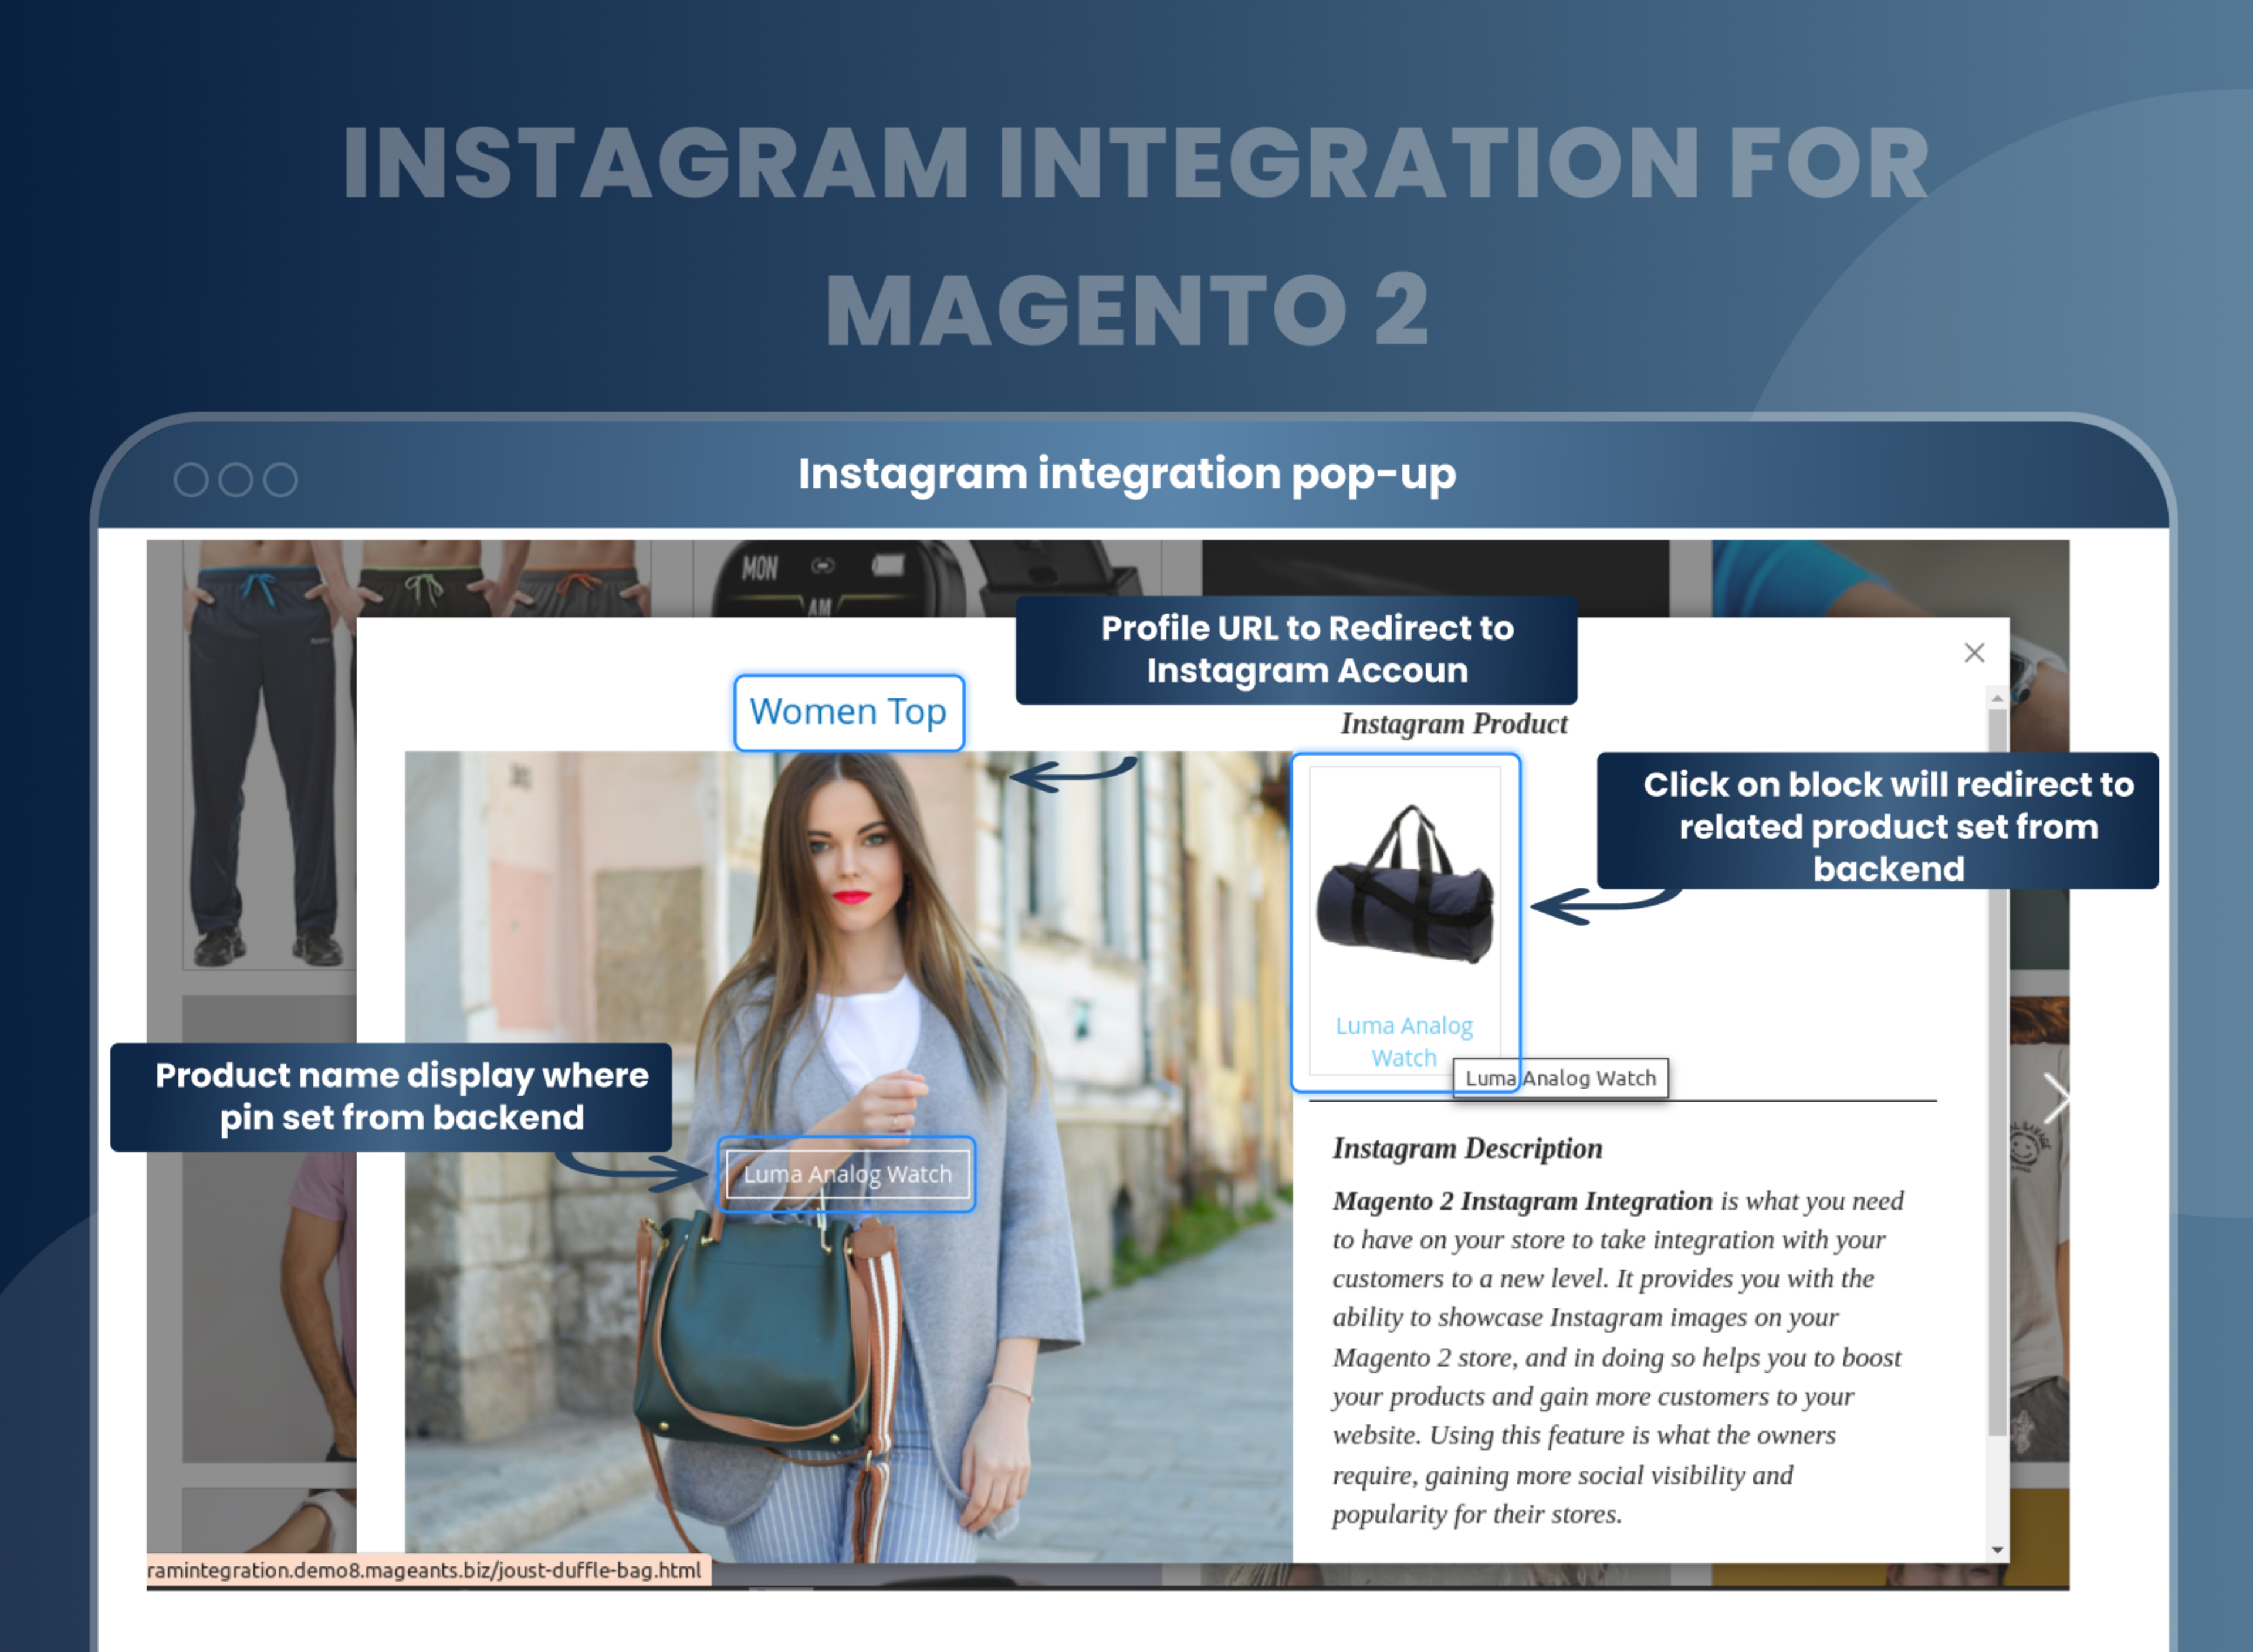 Instagram integration pop-up